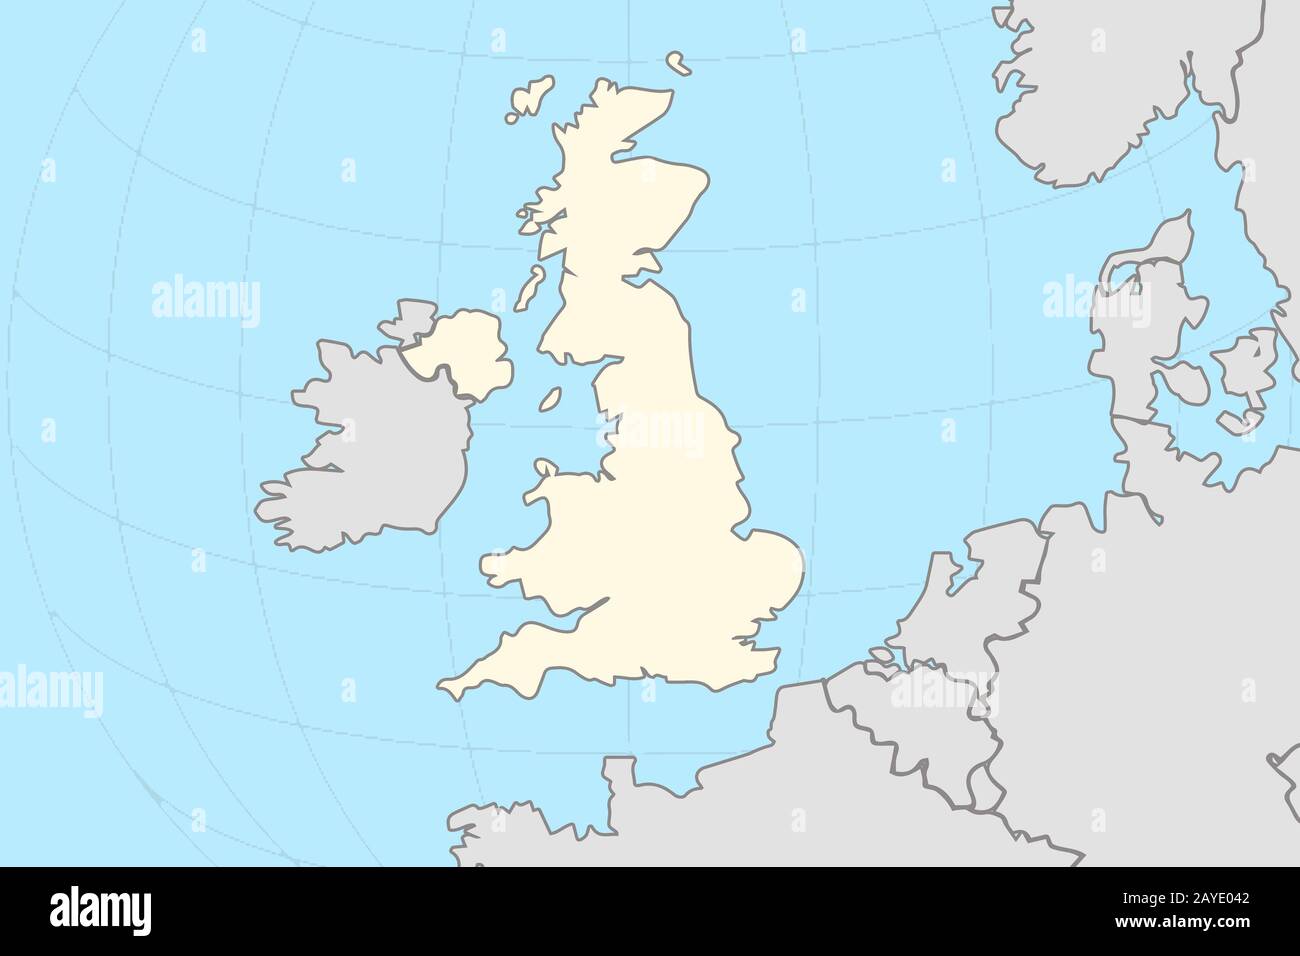 Teil der europäischen Weltkarte mit Der Karte Für Großbritannien, auf der das gelb unterlegte Land in grauer Farbe von der Europäischen Union umgeben ist Stockfoto